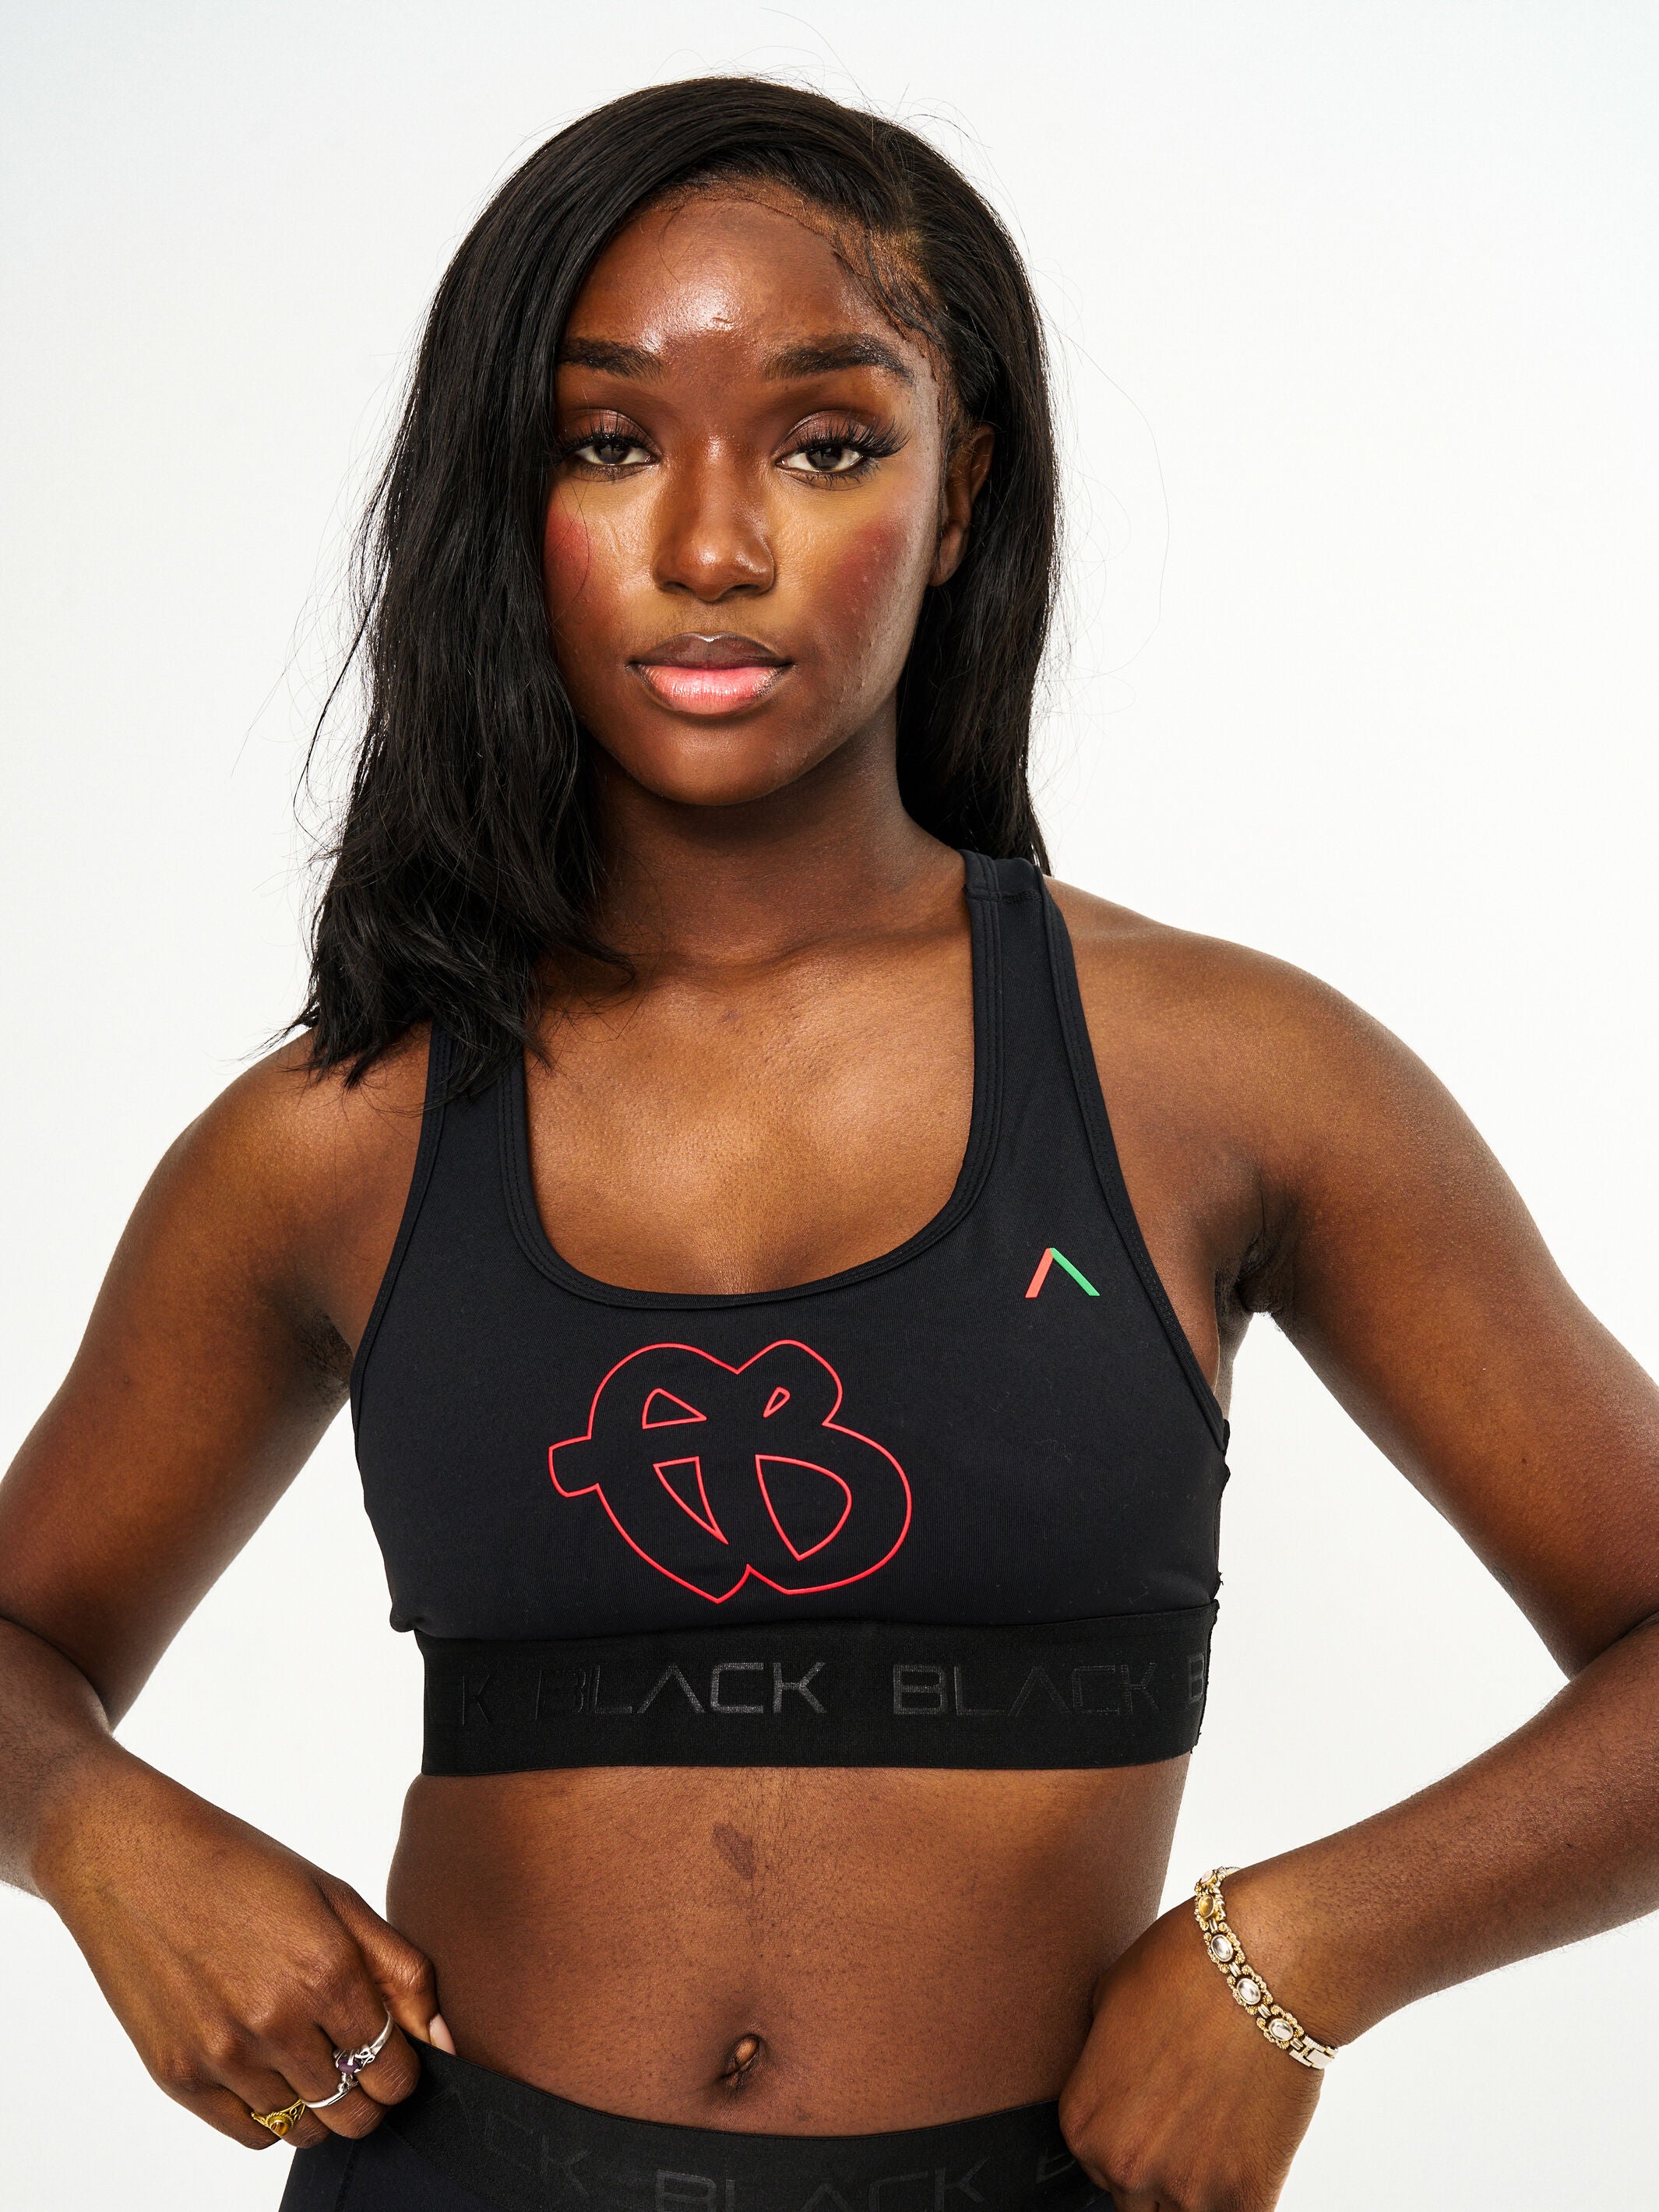 Women's FUBU x Actively Black Sports Bra